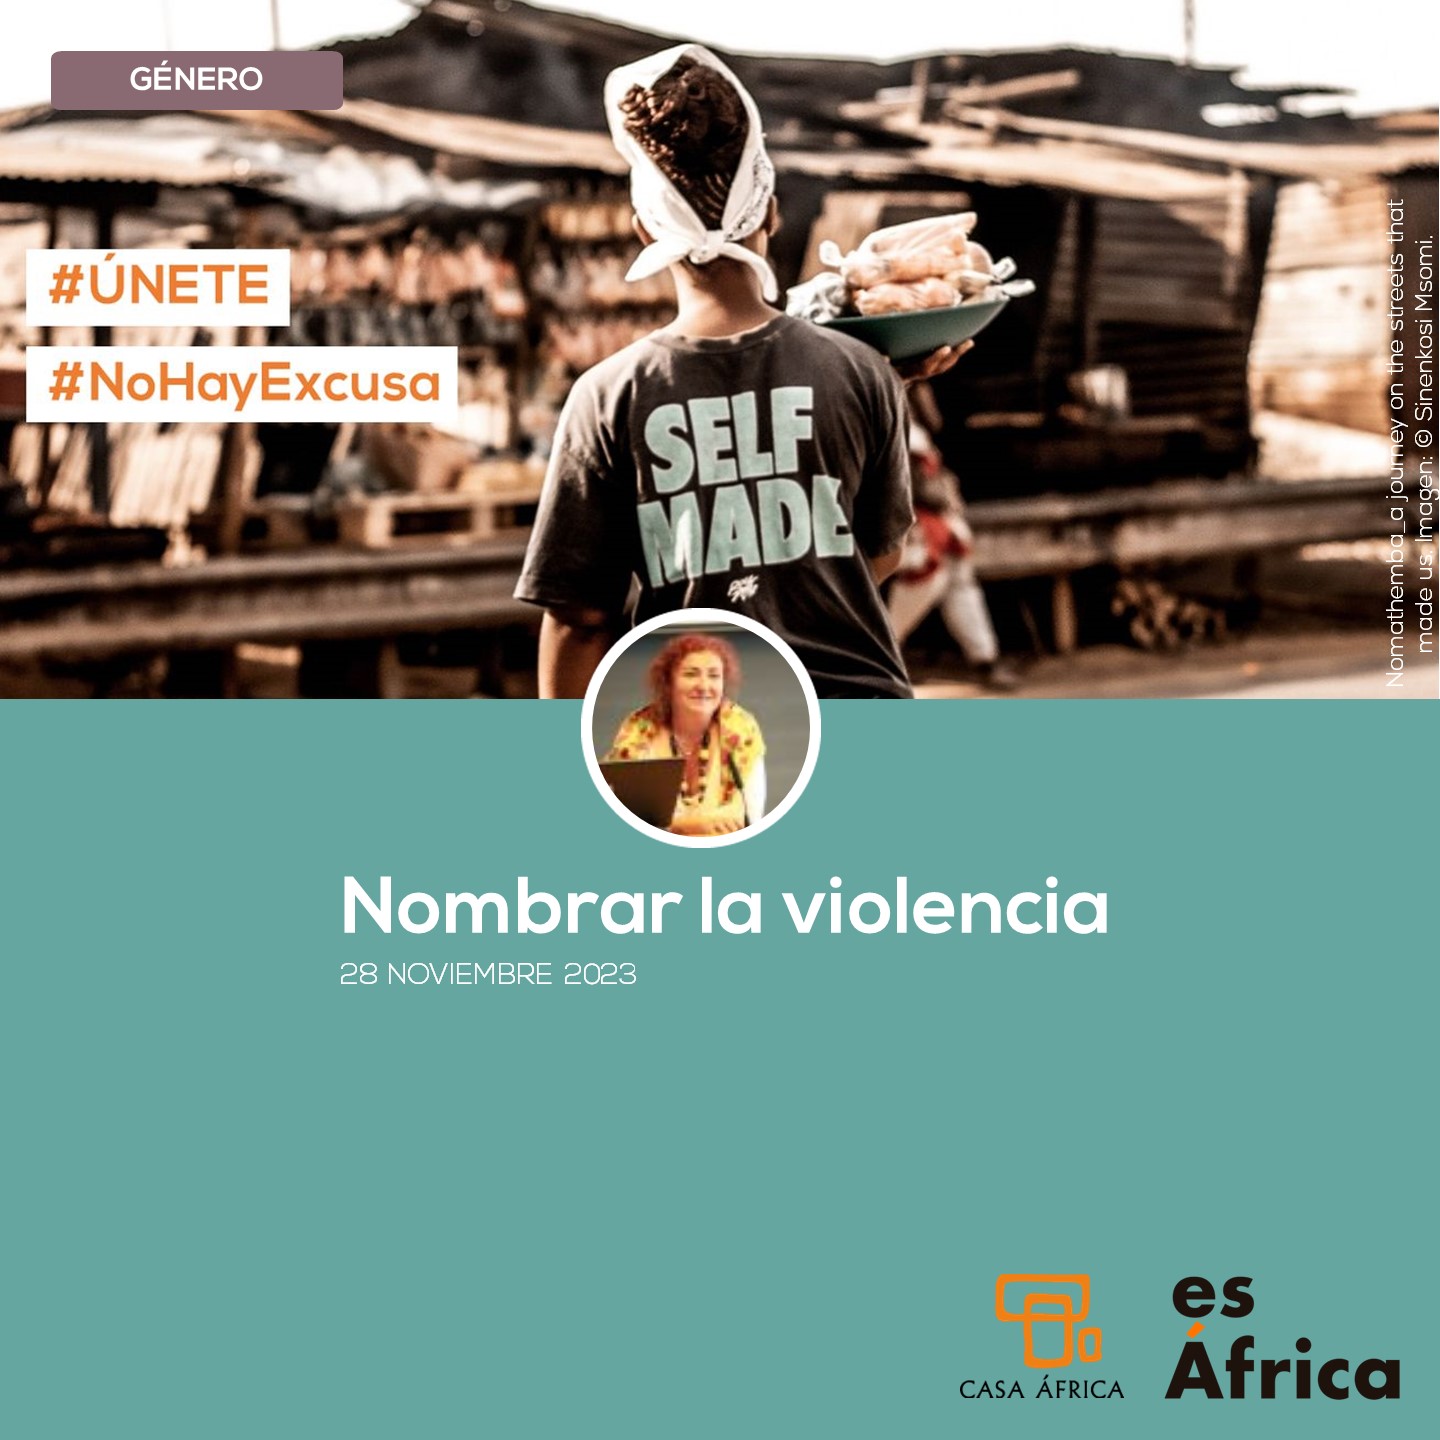 Nombrar la violencia. Artículo de Marta Sofía en nuestro blog EsÁfrica